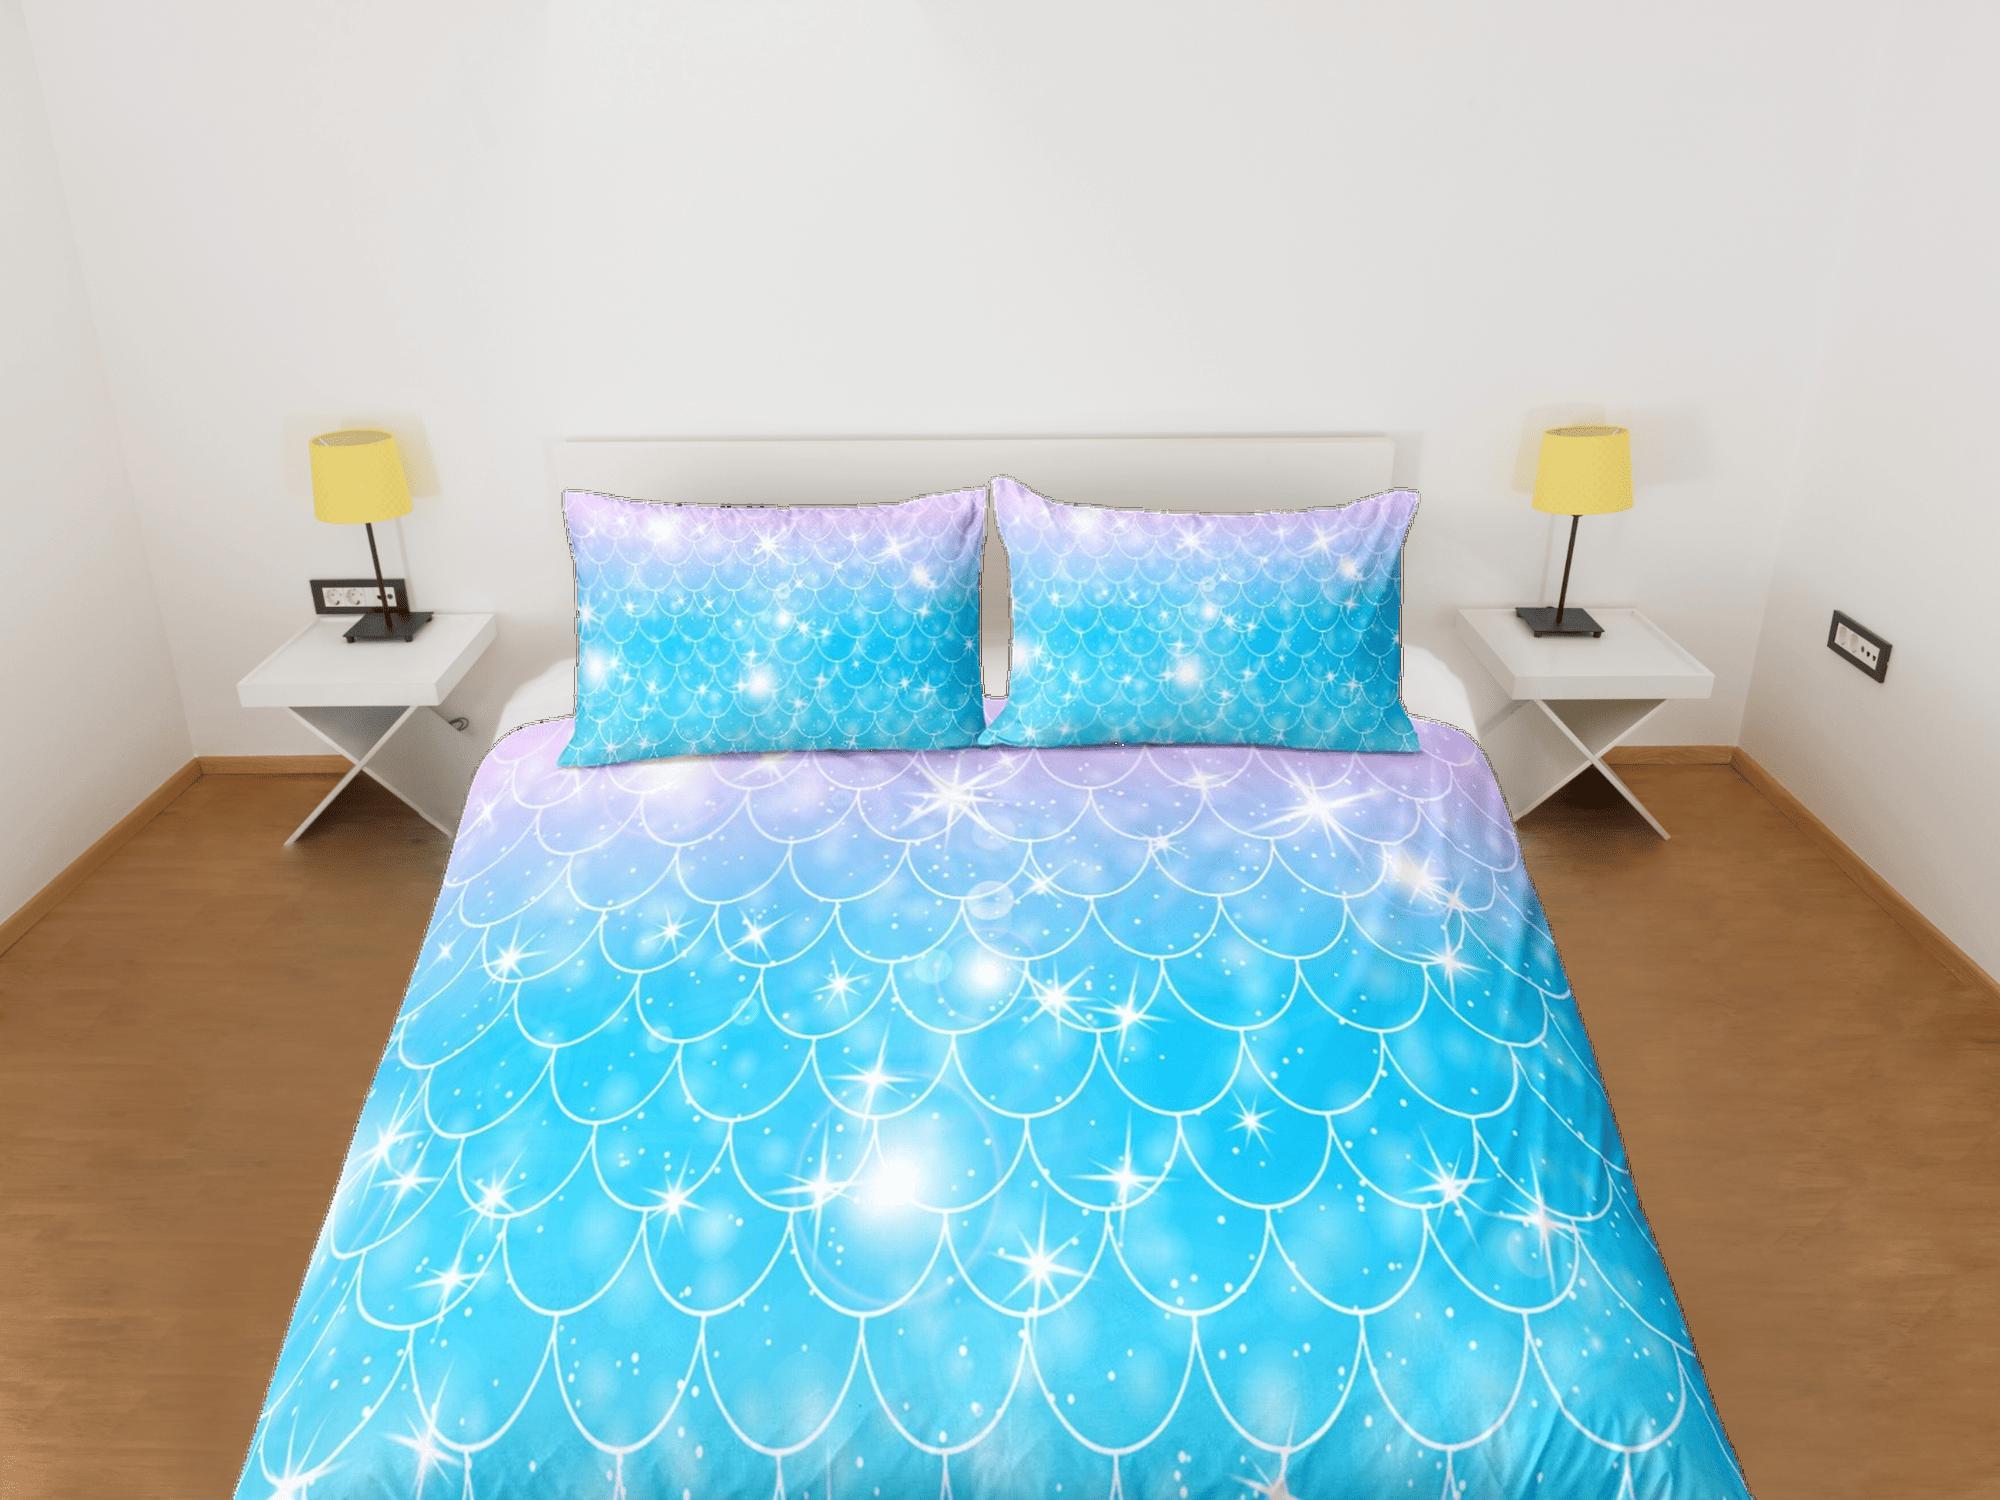 daintyduvet Mermaid Tail Duvet Cover Set, Pastel Rainbow Blanket Dorm Bedding Set, Comforter Cover Kids Bedding